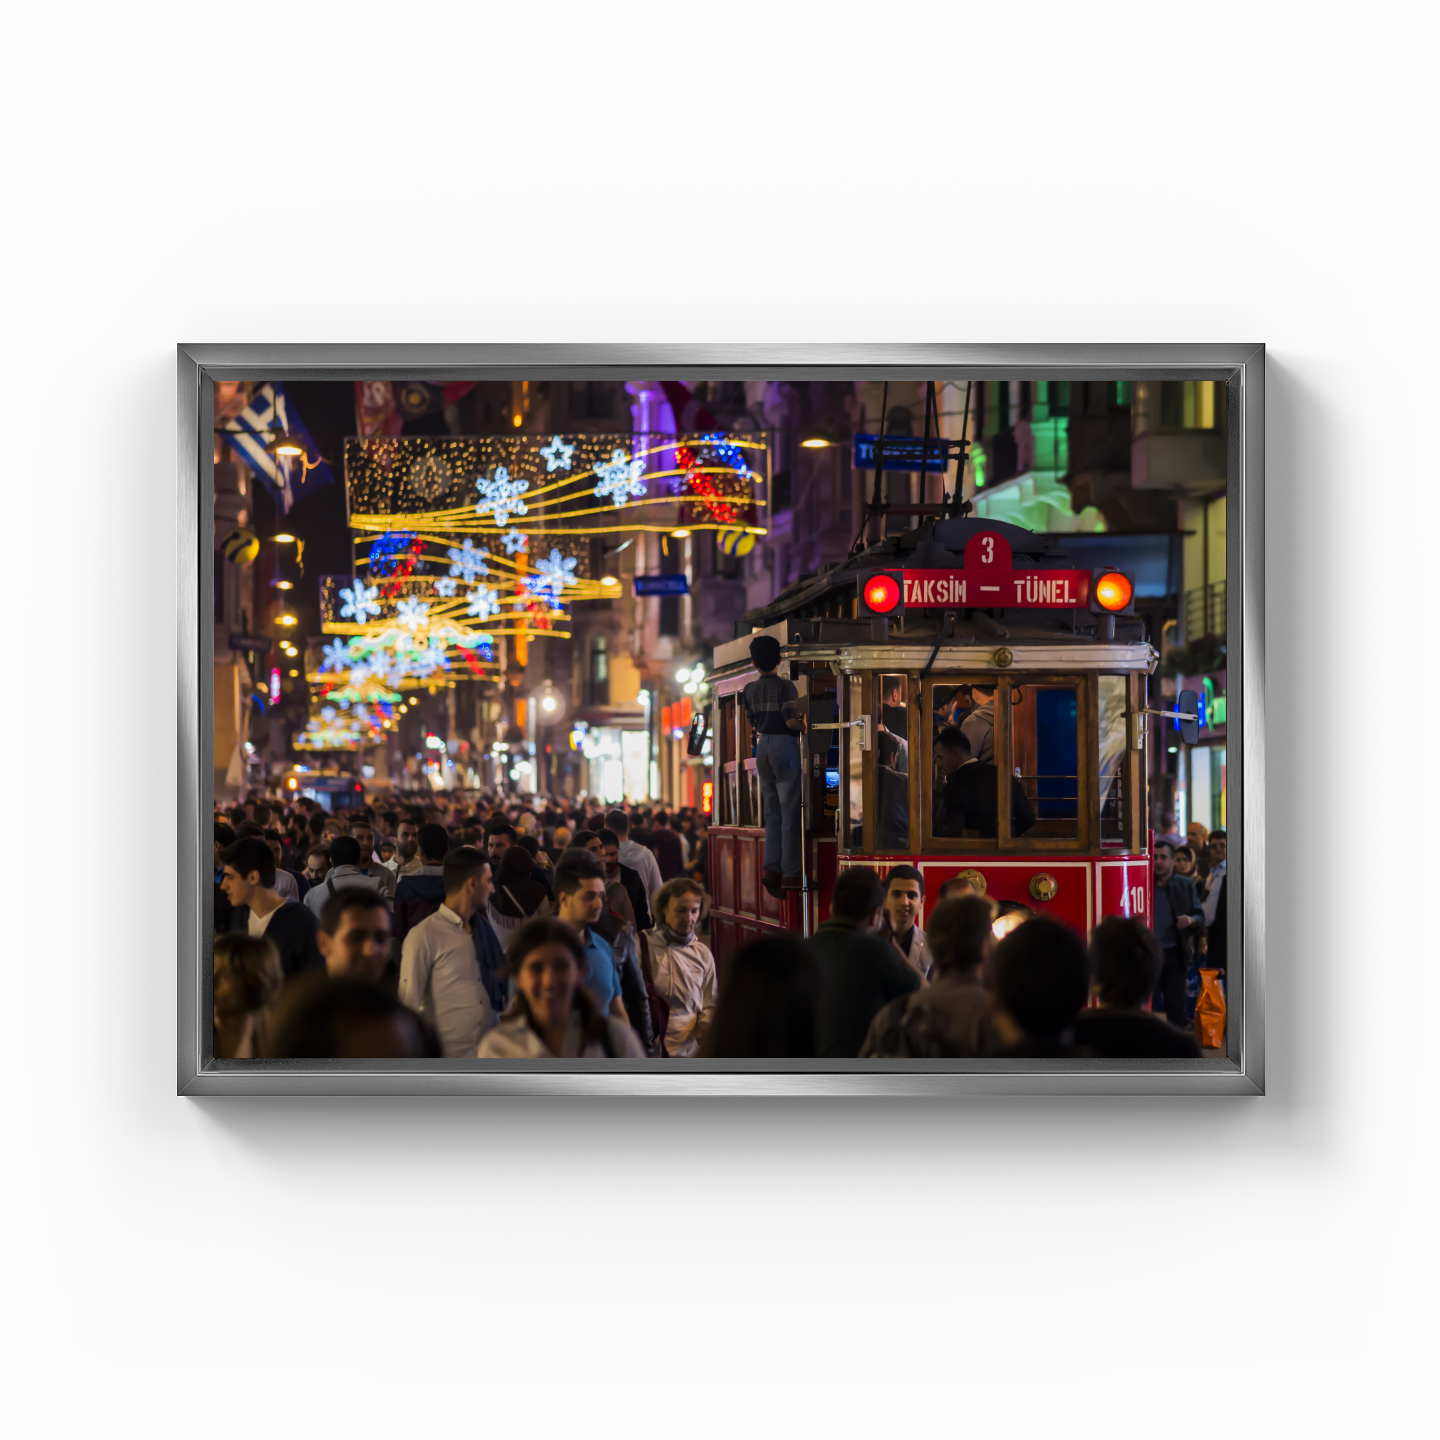 İstiklal Caddesi - Kanvas Tablo